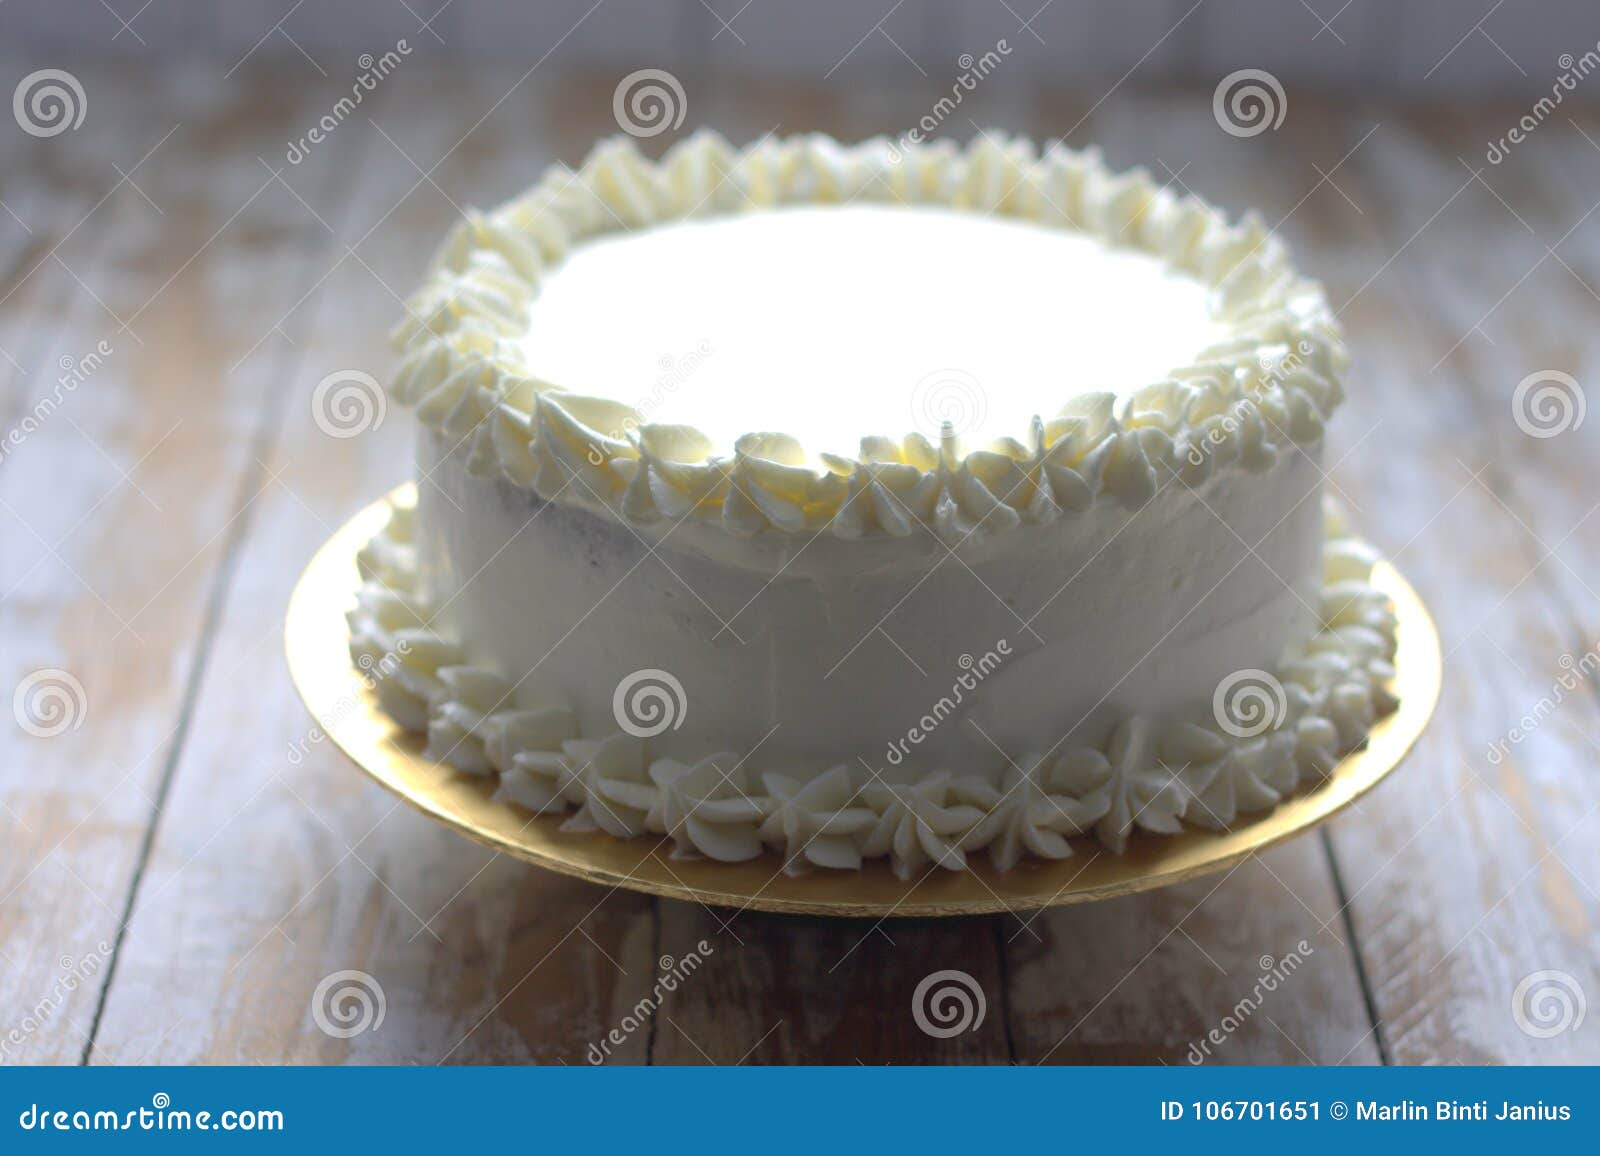 All-Occasion White Cake - Bakerella